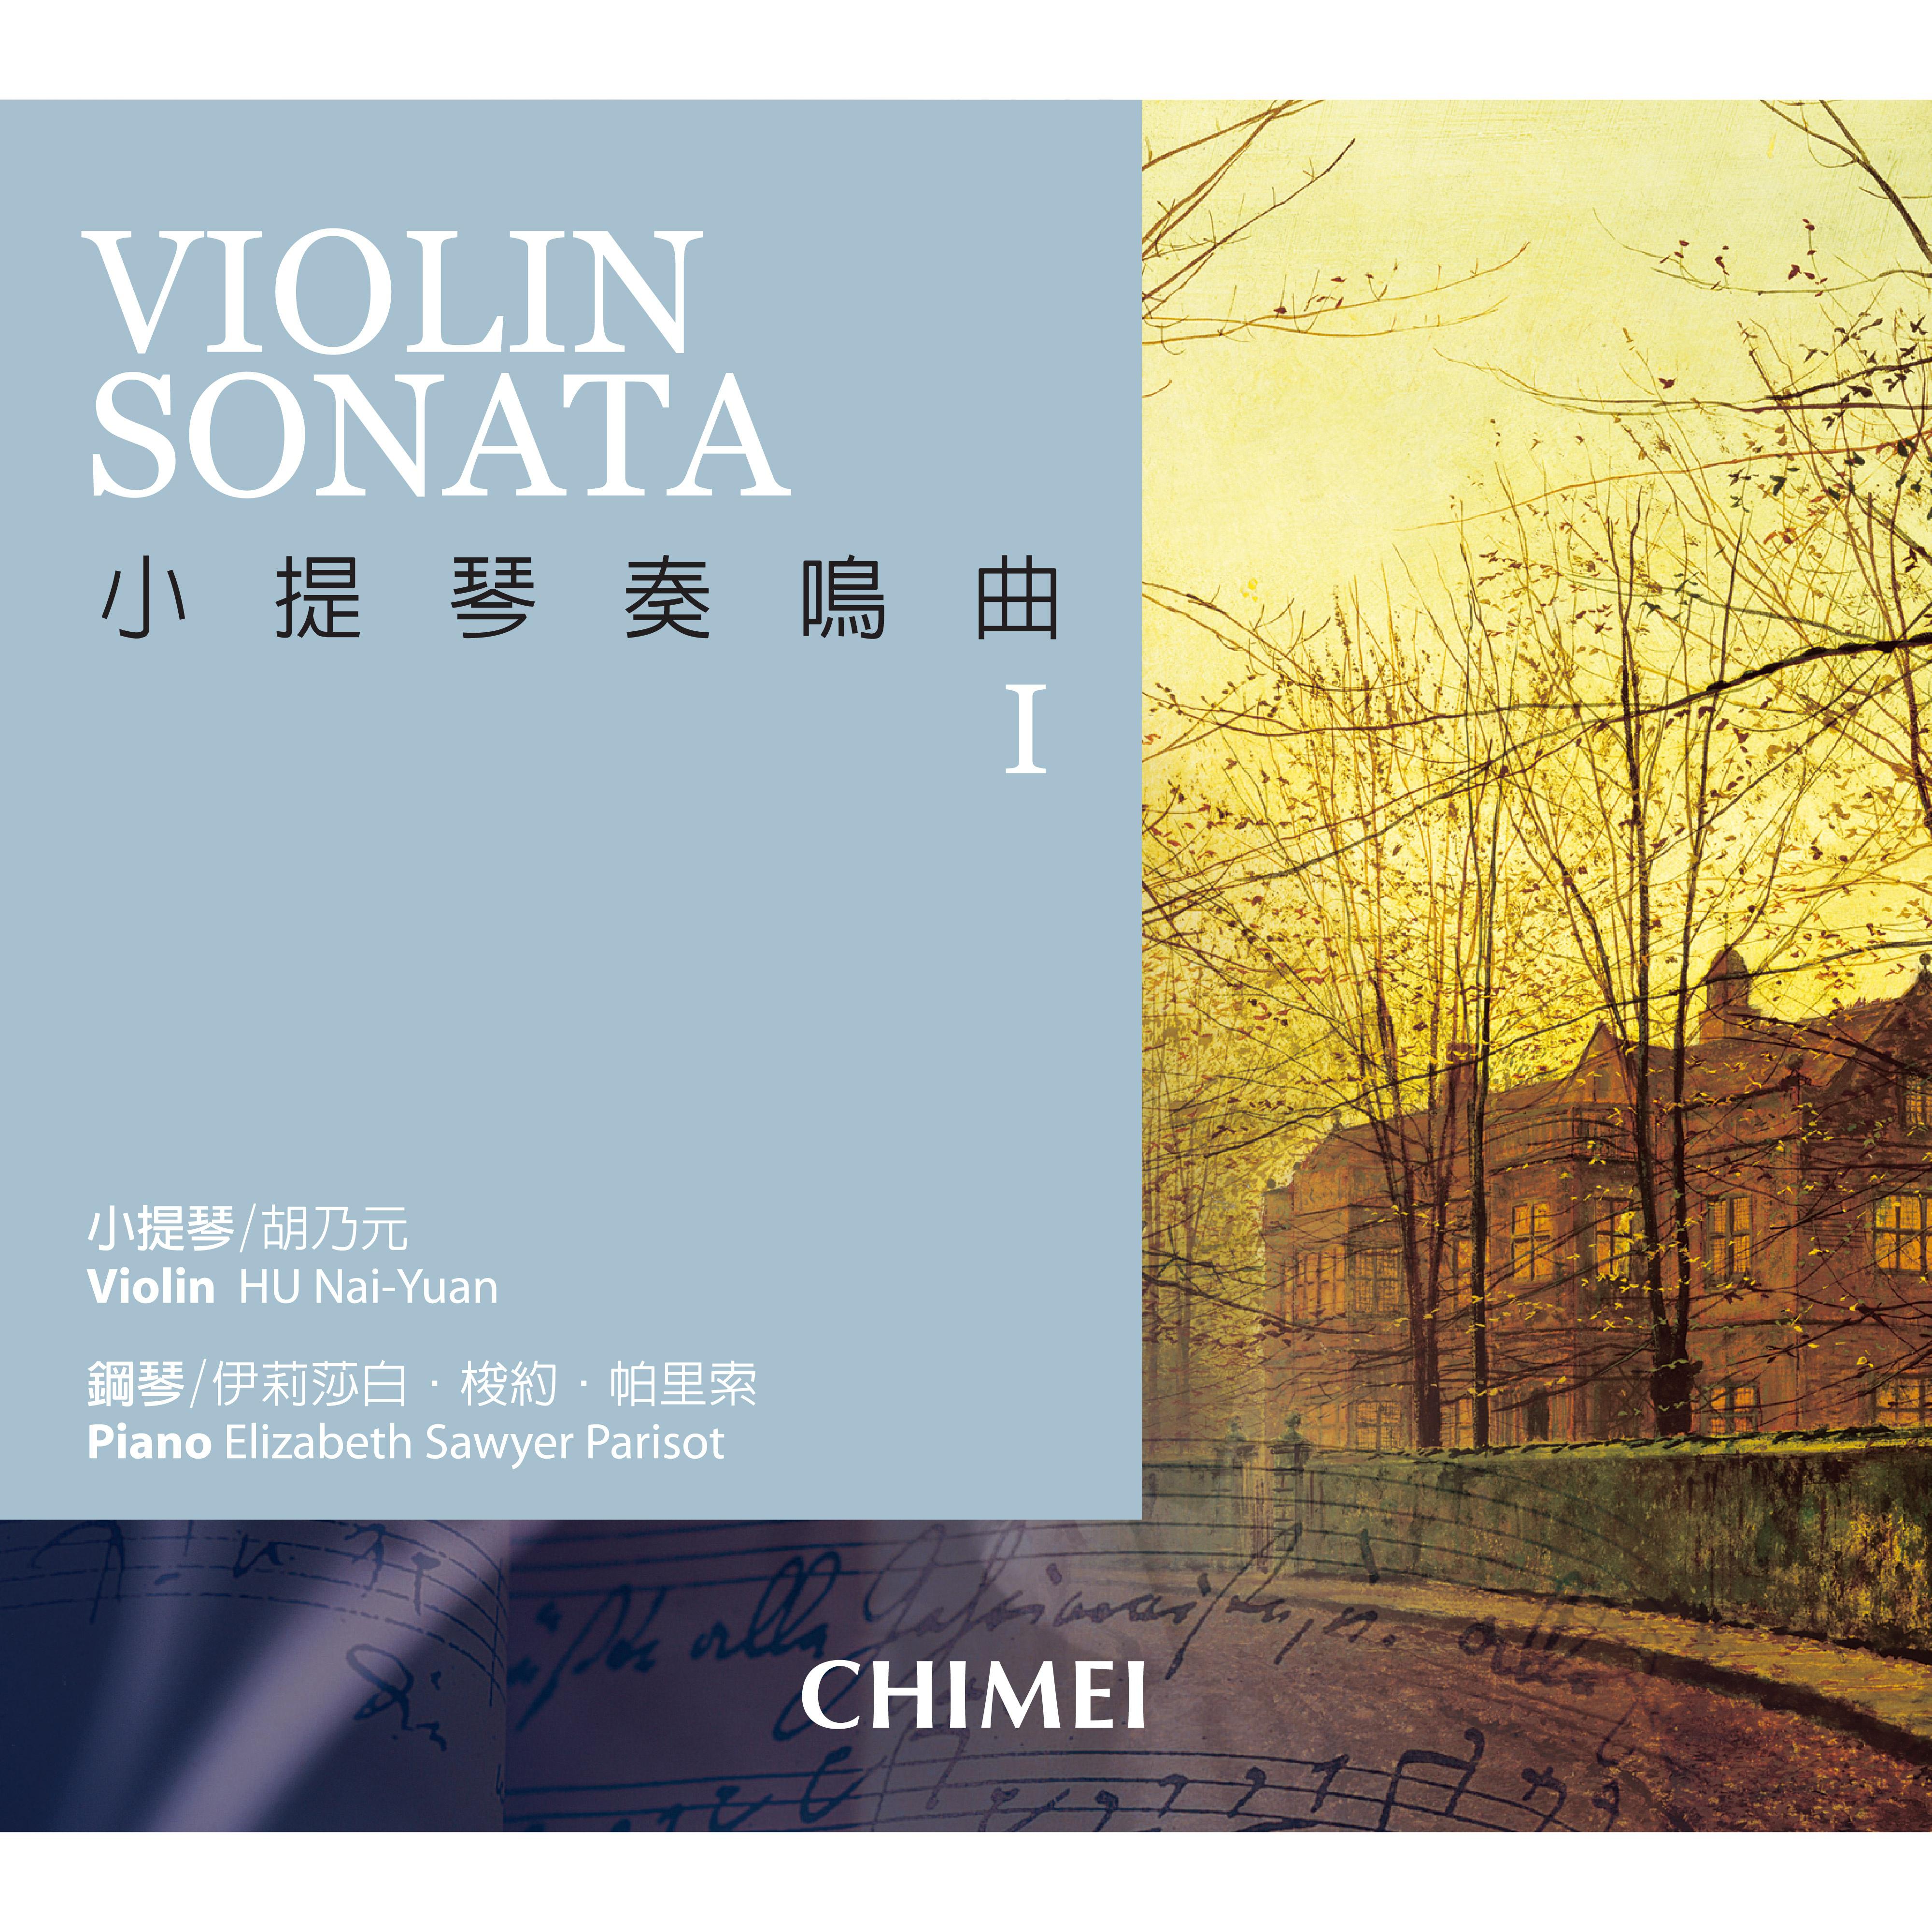 Handel: Sonata for Violin and Basso Continuo in D Major, HWV 371: . Larghetto